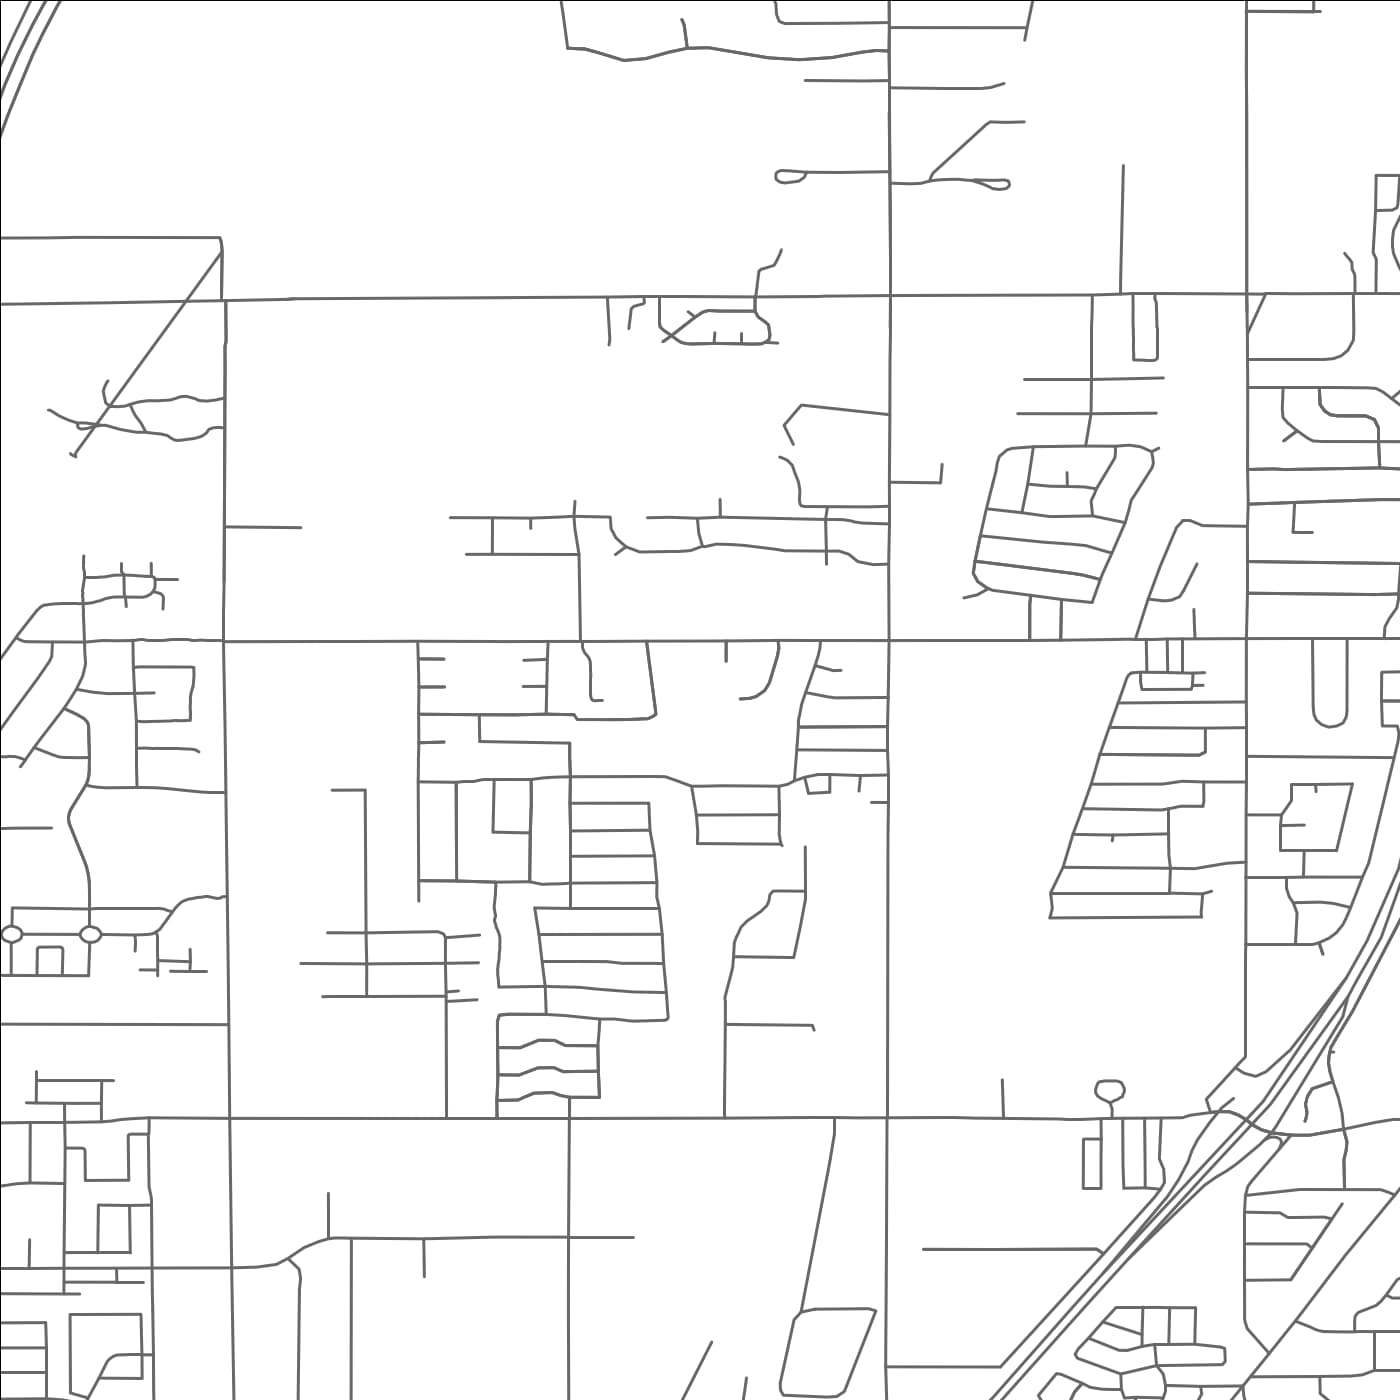 ROAD MAP OF WOODS CROSS, UTAH BY MAPBAKES